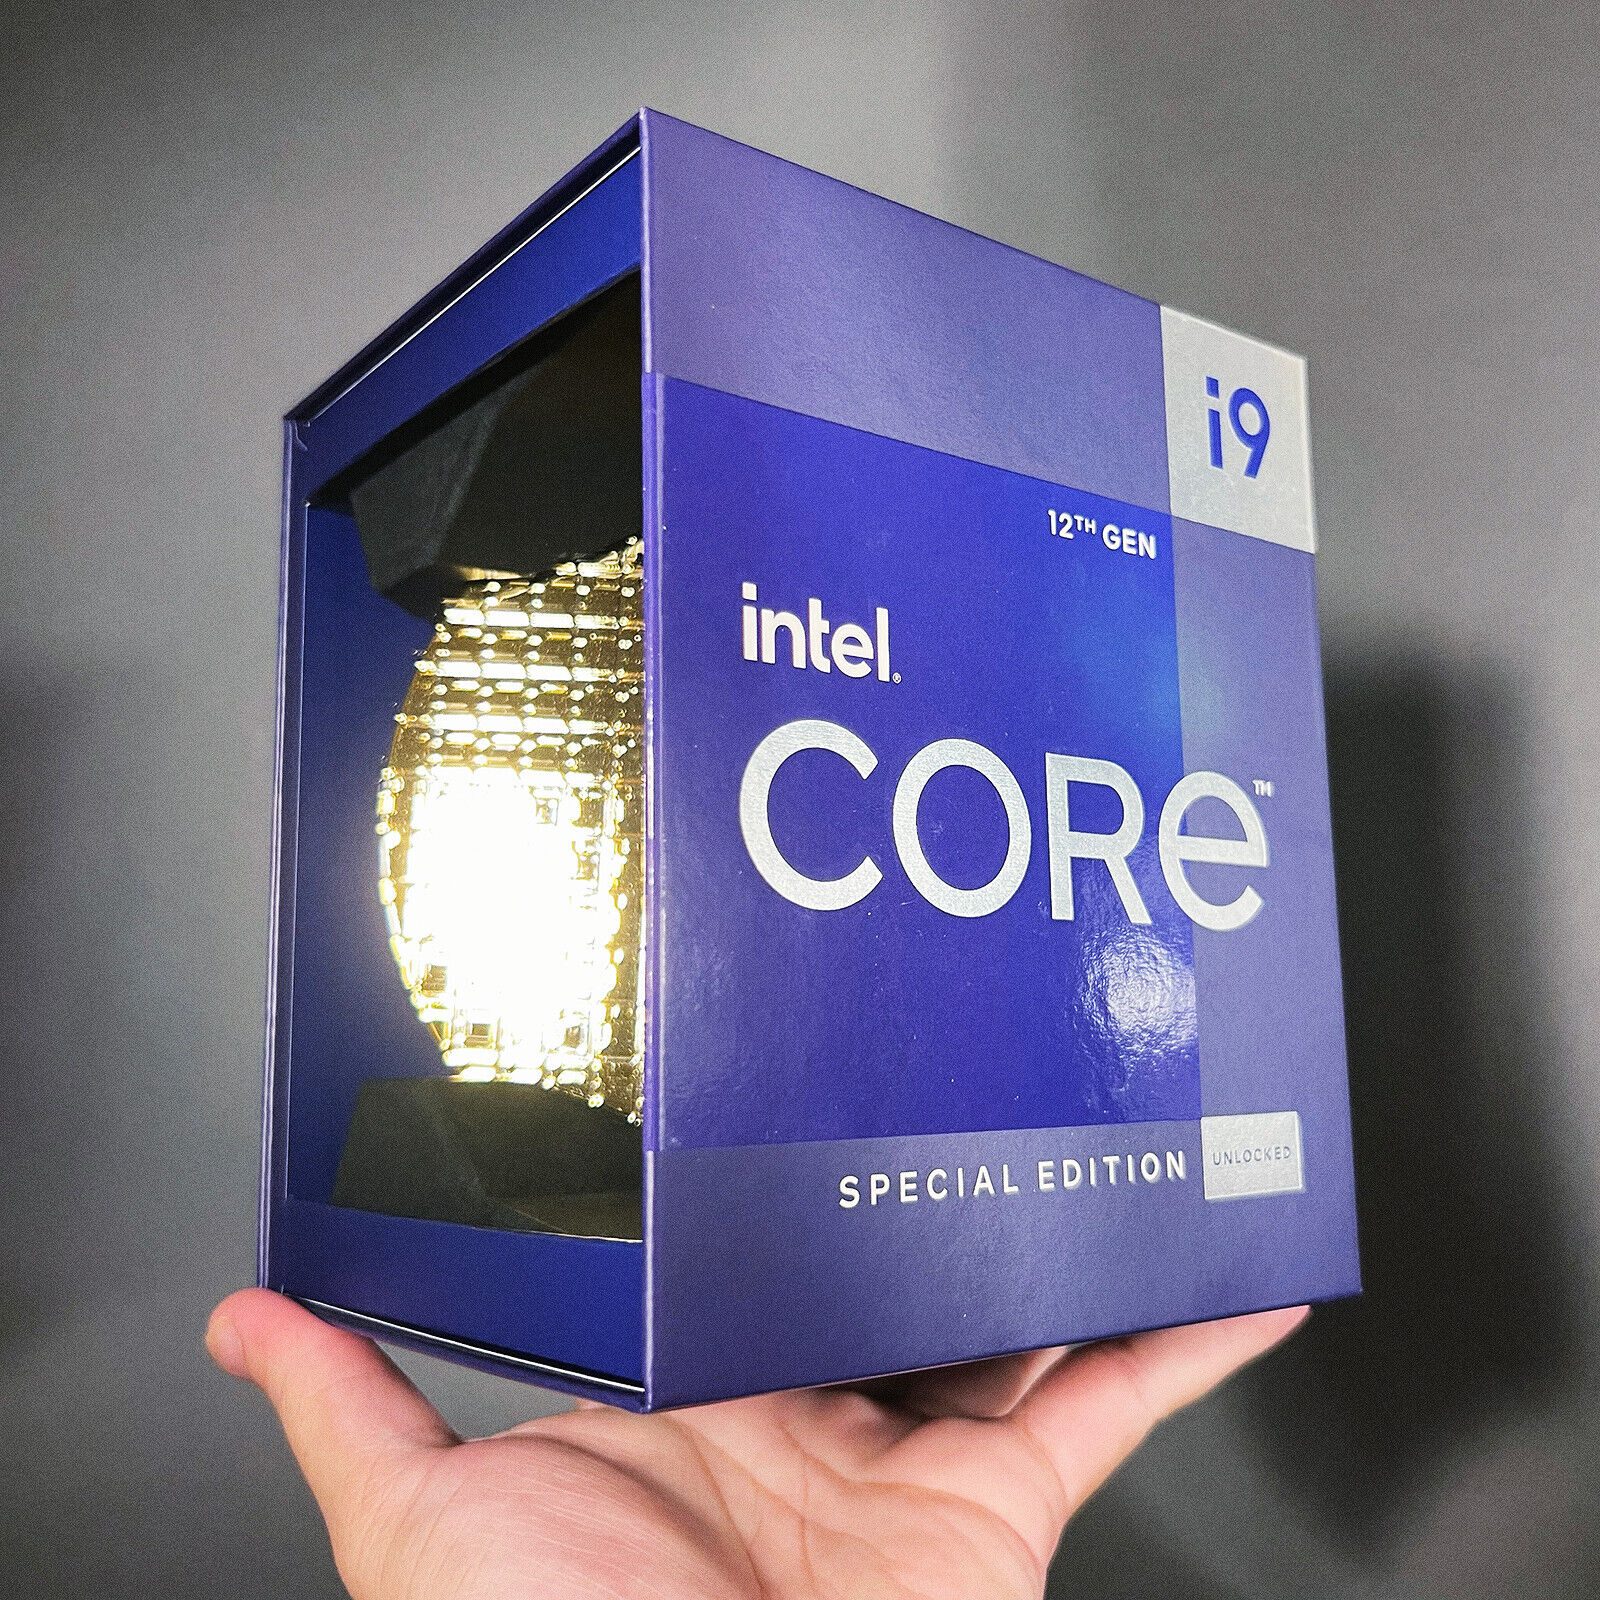 Intel Core i9-12900KS 12th Gen Alder Lake 16-Core 3.4 GHz LGA CPU Processor, NEW